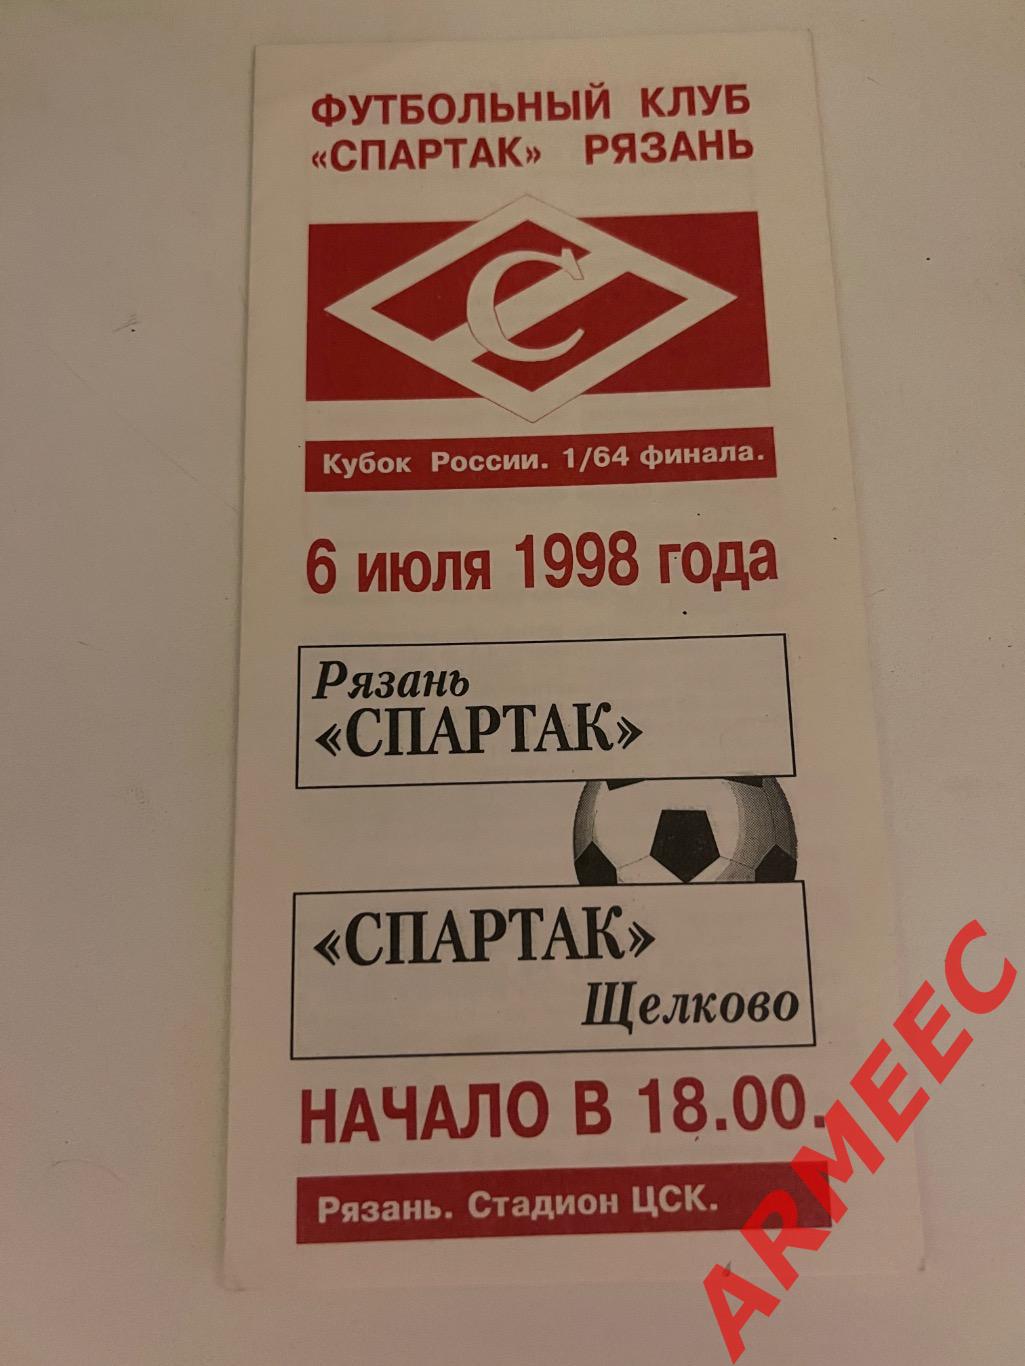 Спартак (Рязань)-Спартак (Щелково) 6.07.1998